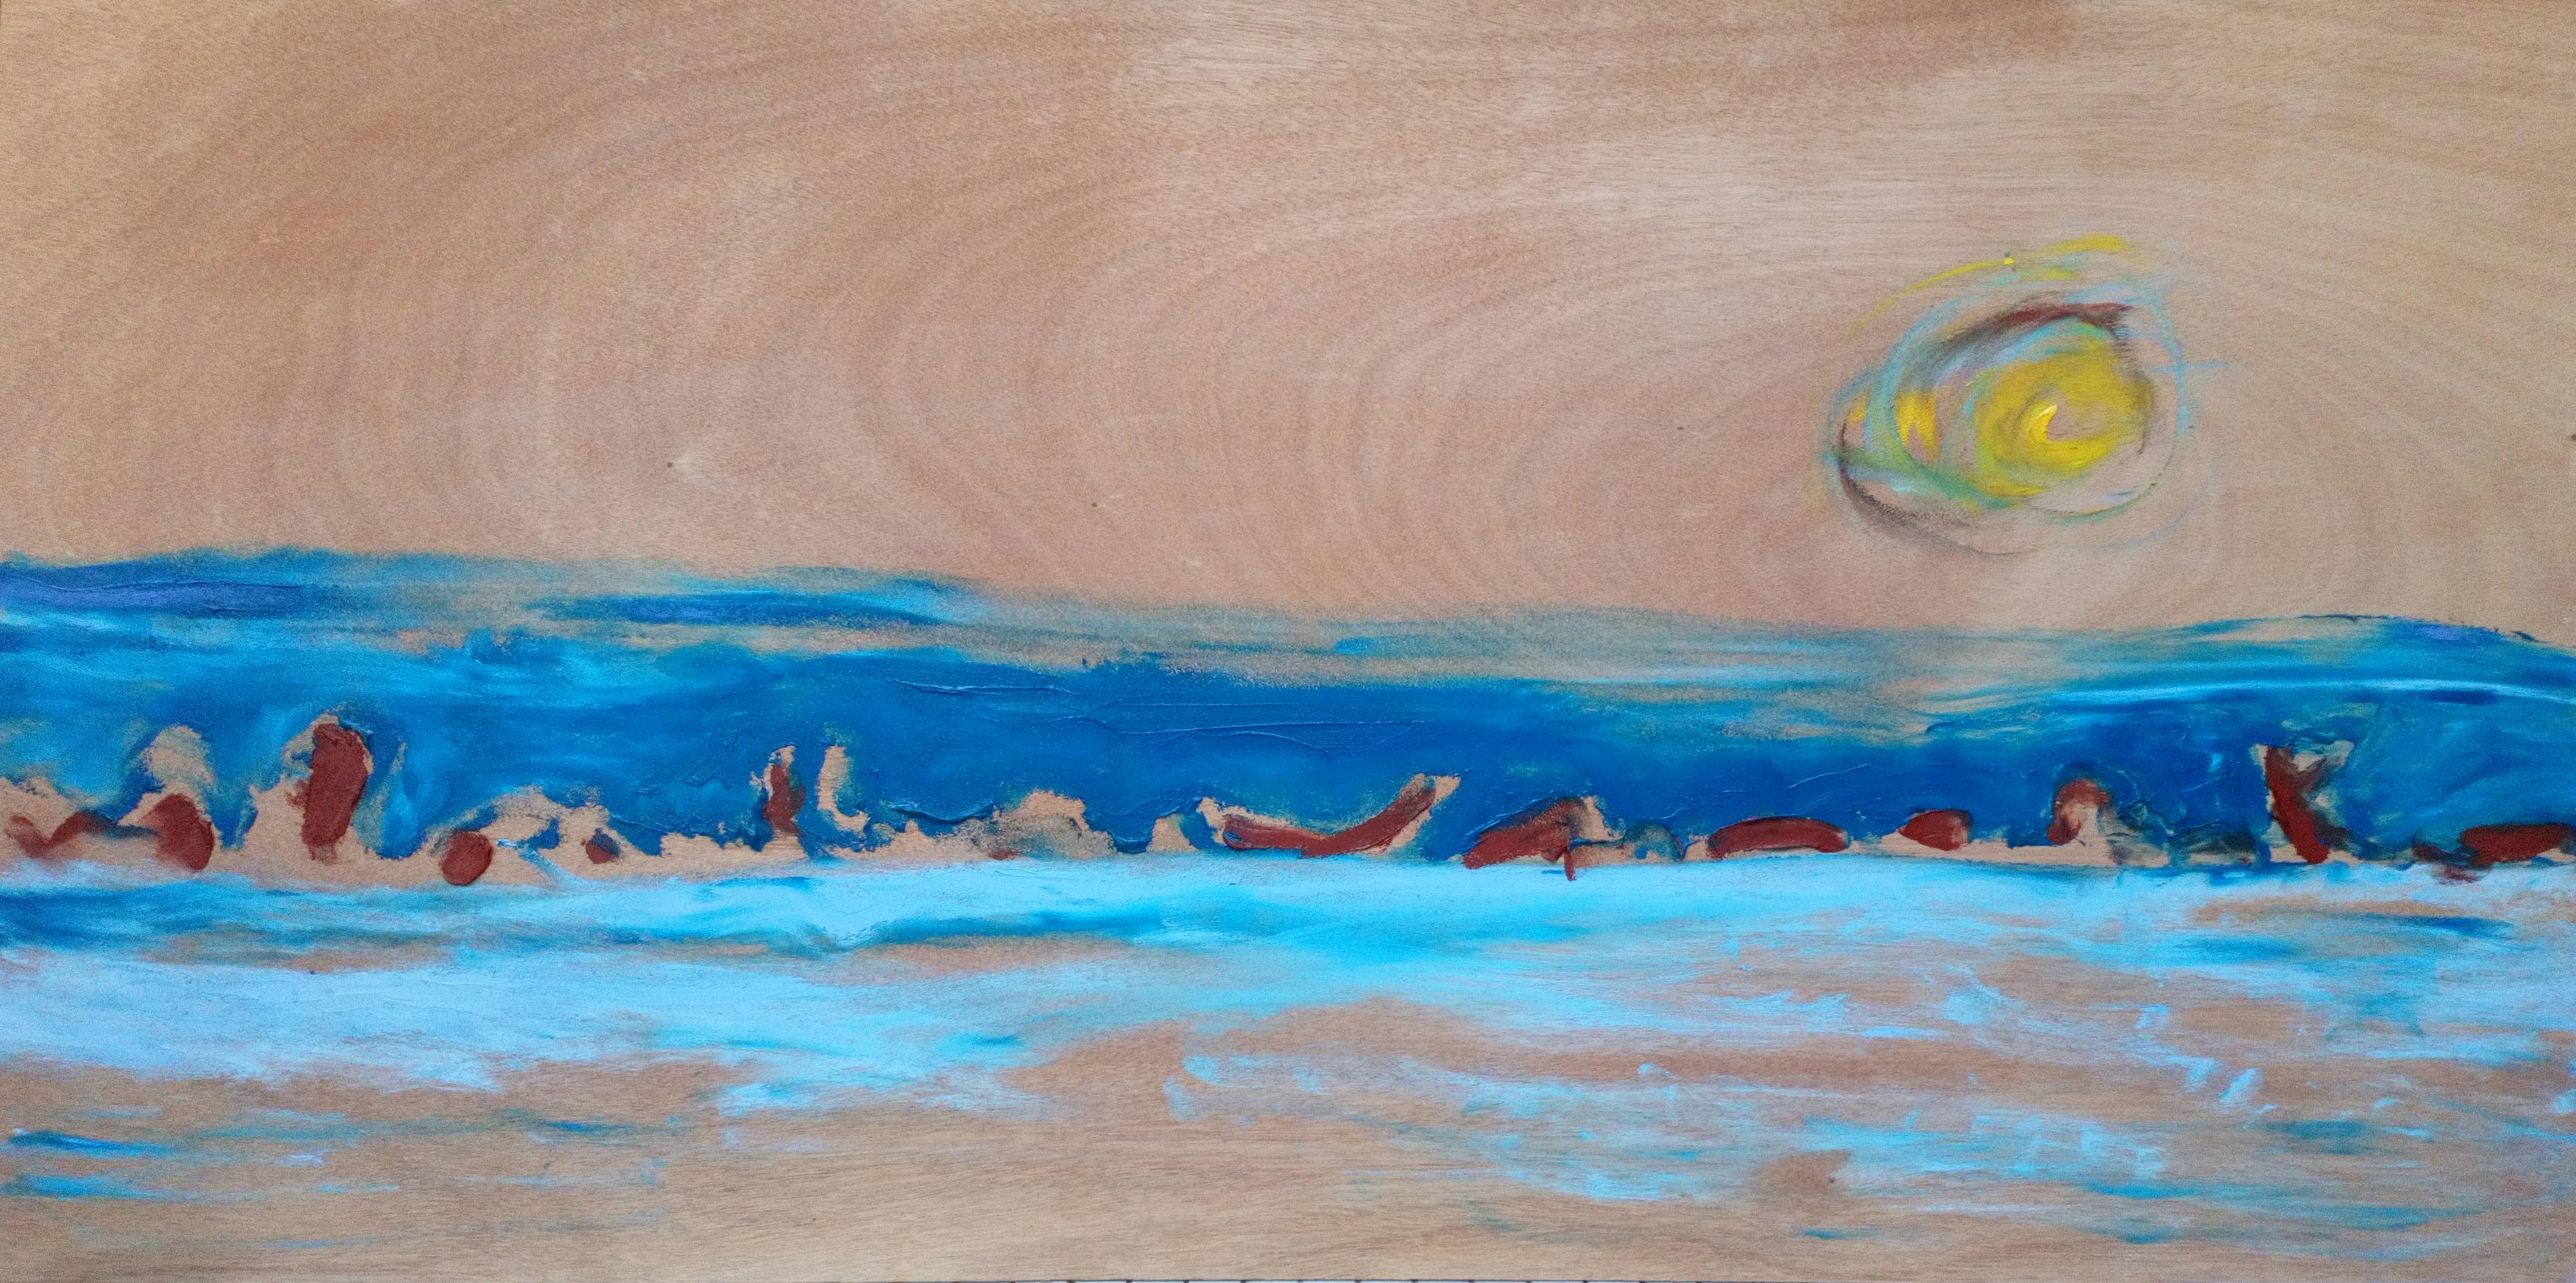 Banque de sable Nicolas Kennett Peinture contemporaine - Paysage naturel, paysage animal bleu mer